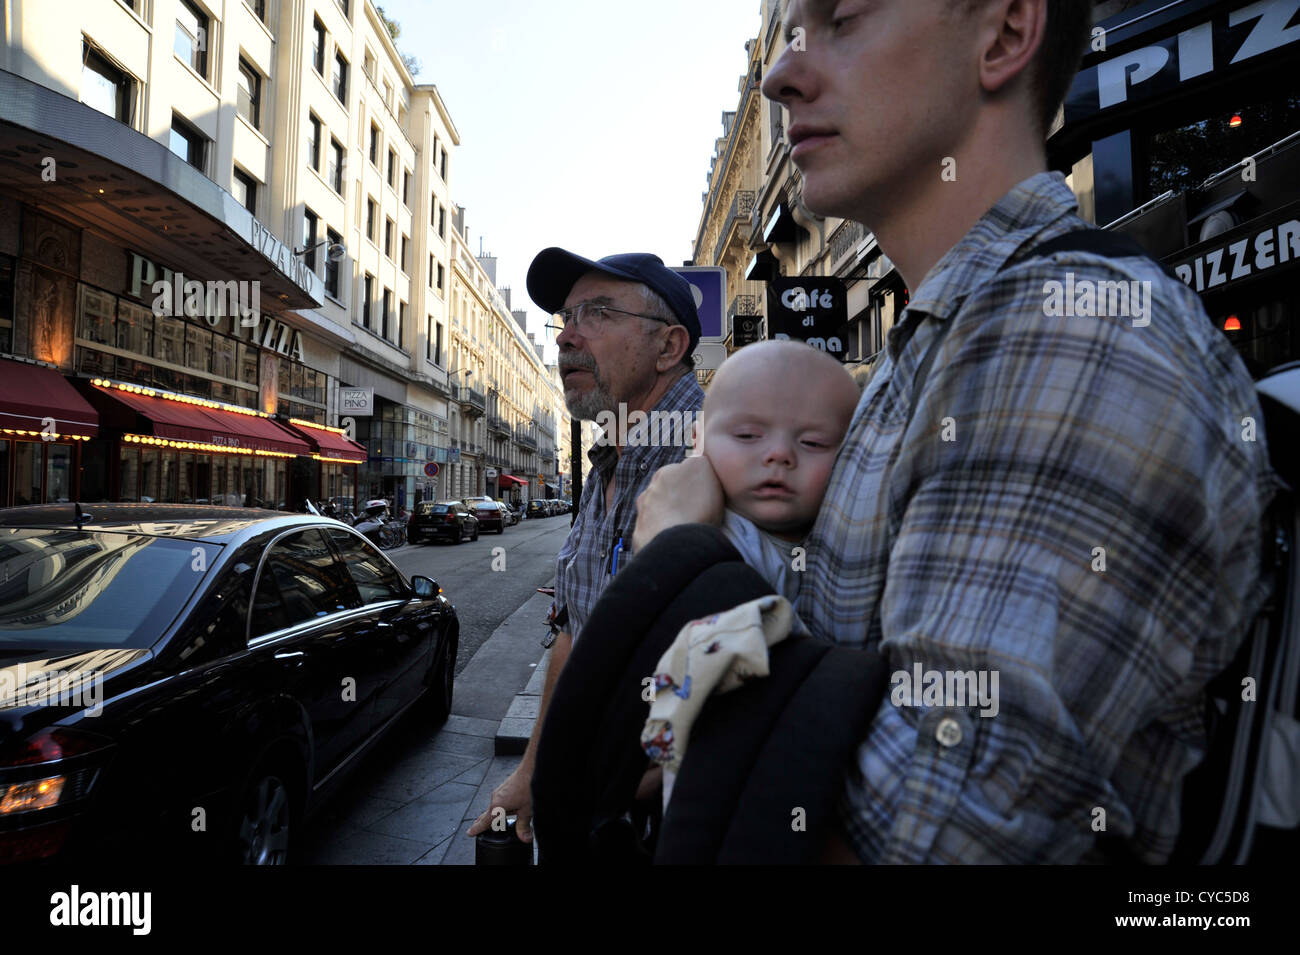 Grand-père, père et bébé balade en ville, Paris, France Banque D'Images